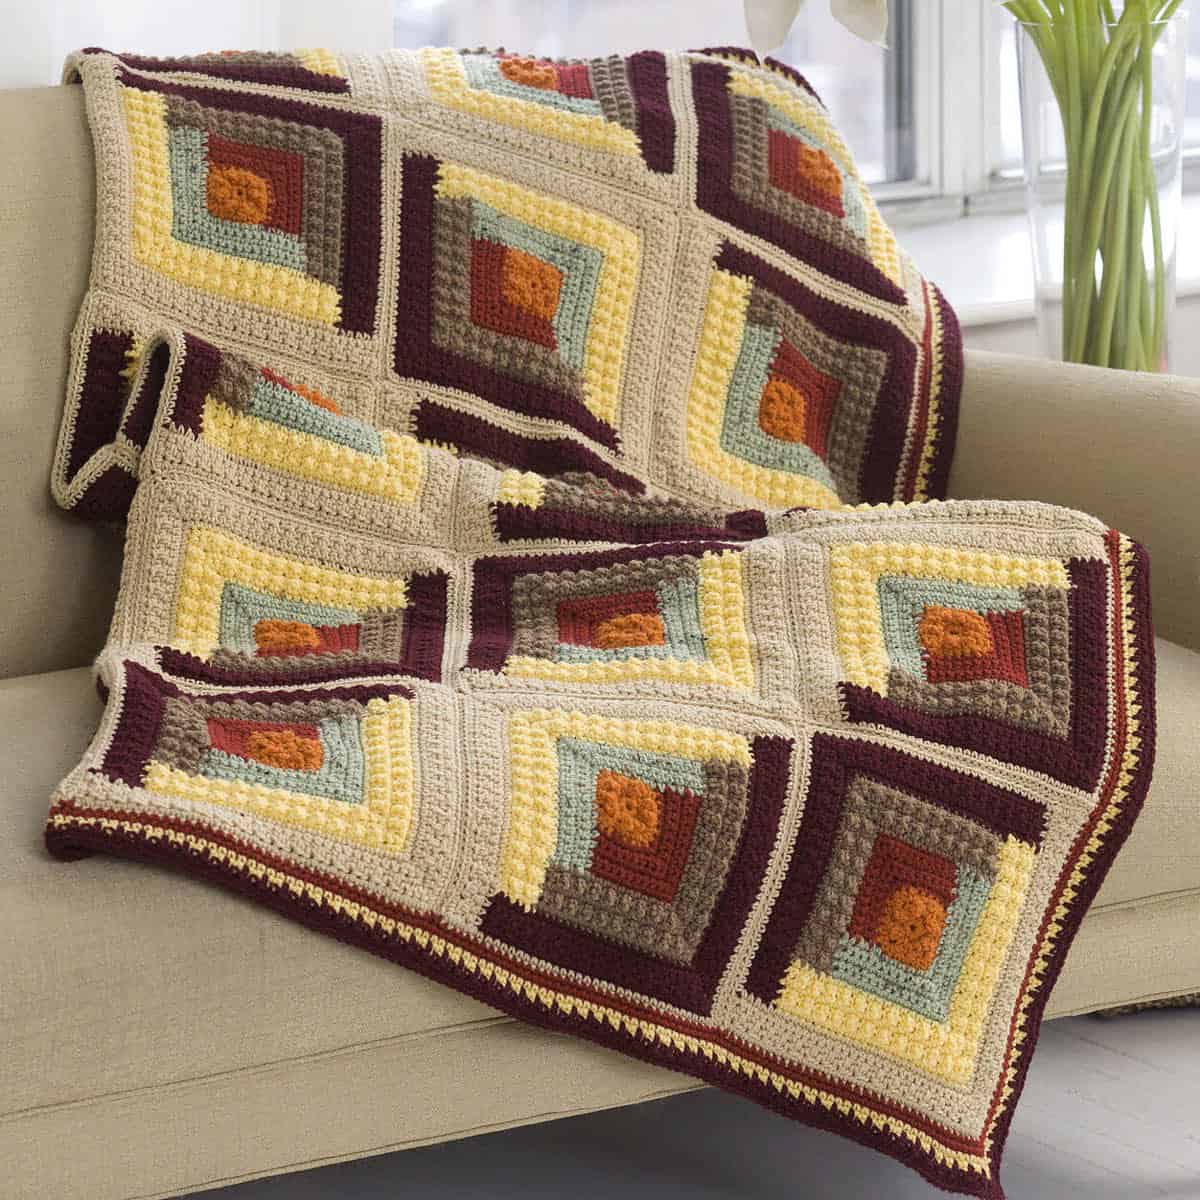 New Crochet Log Cabin Blanket